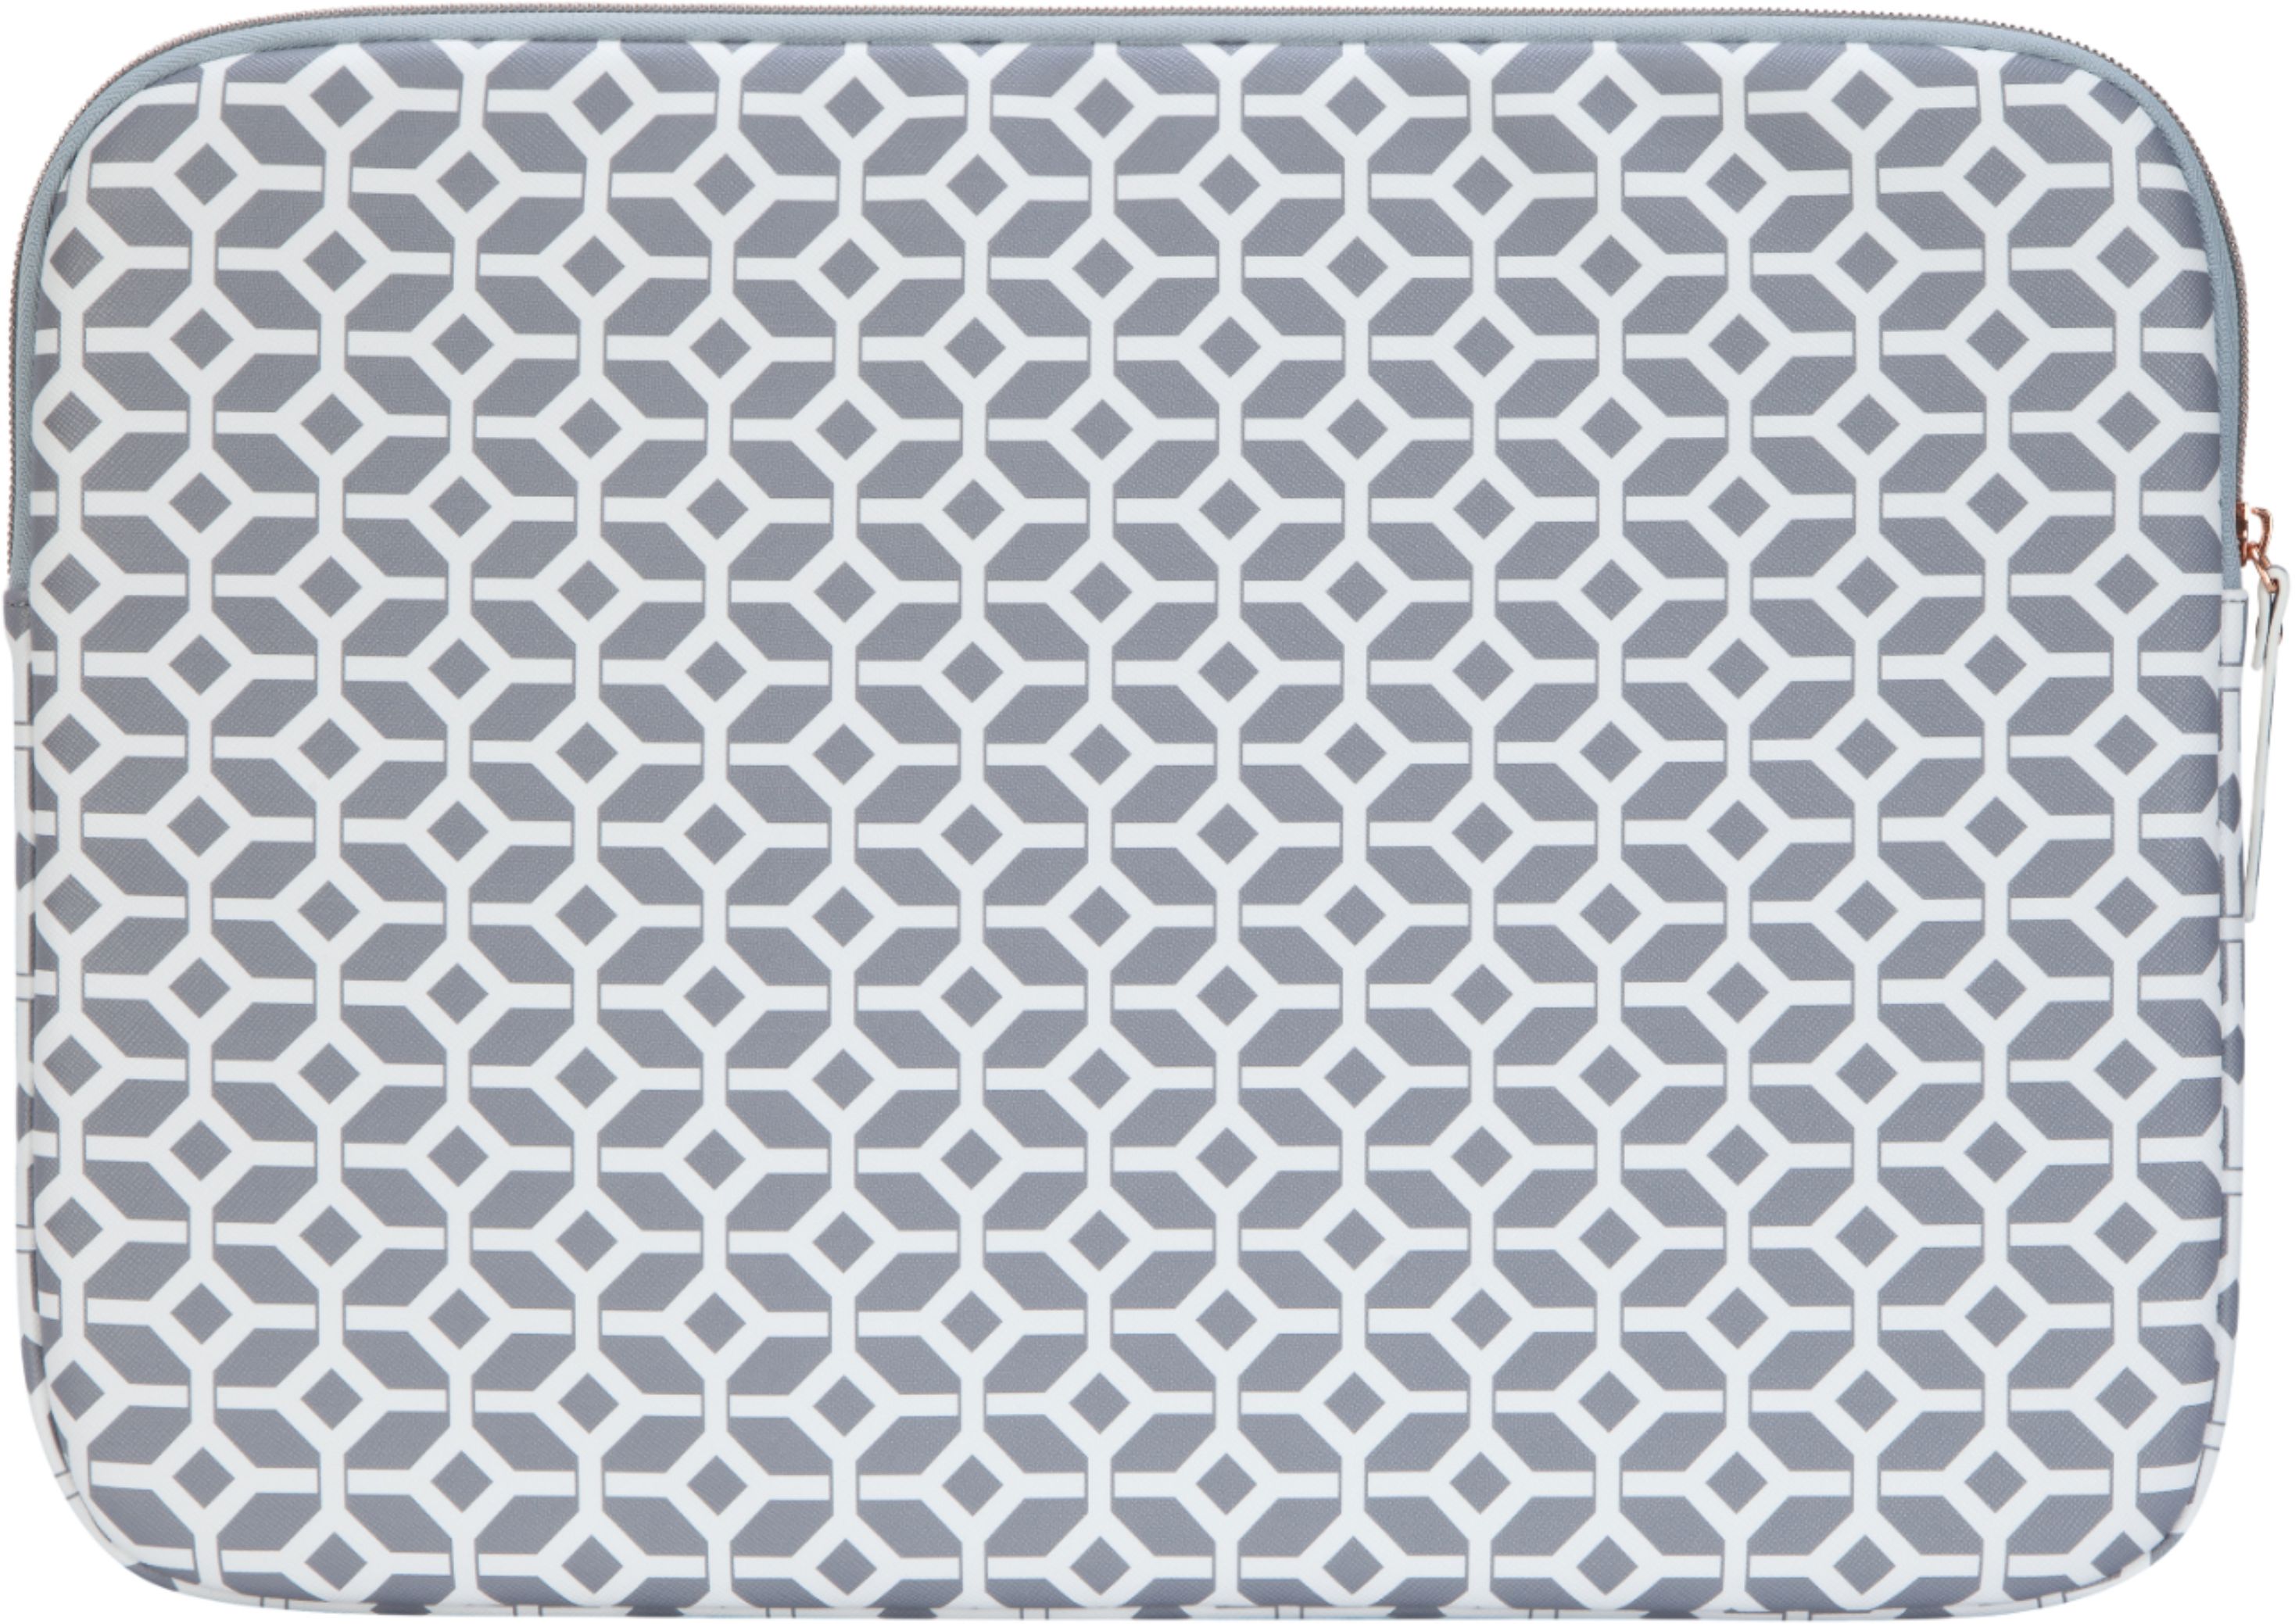 Targus - Sleeve for 15.6" Laptop - Gray/White/Geometric